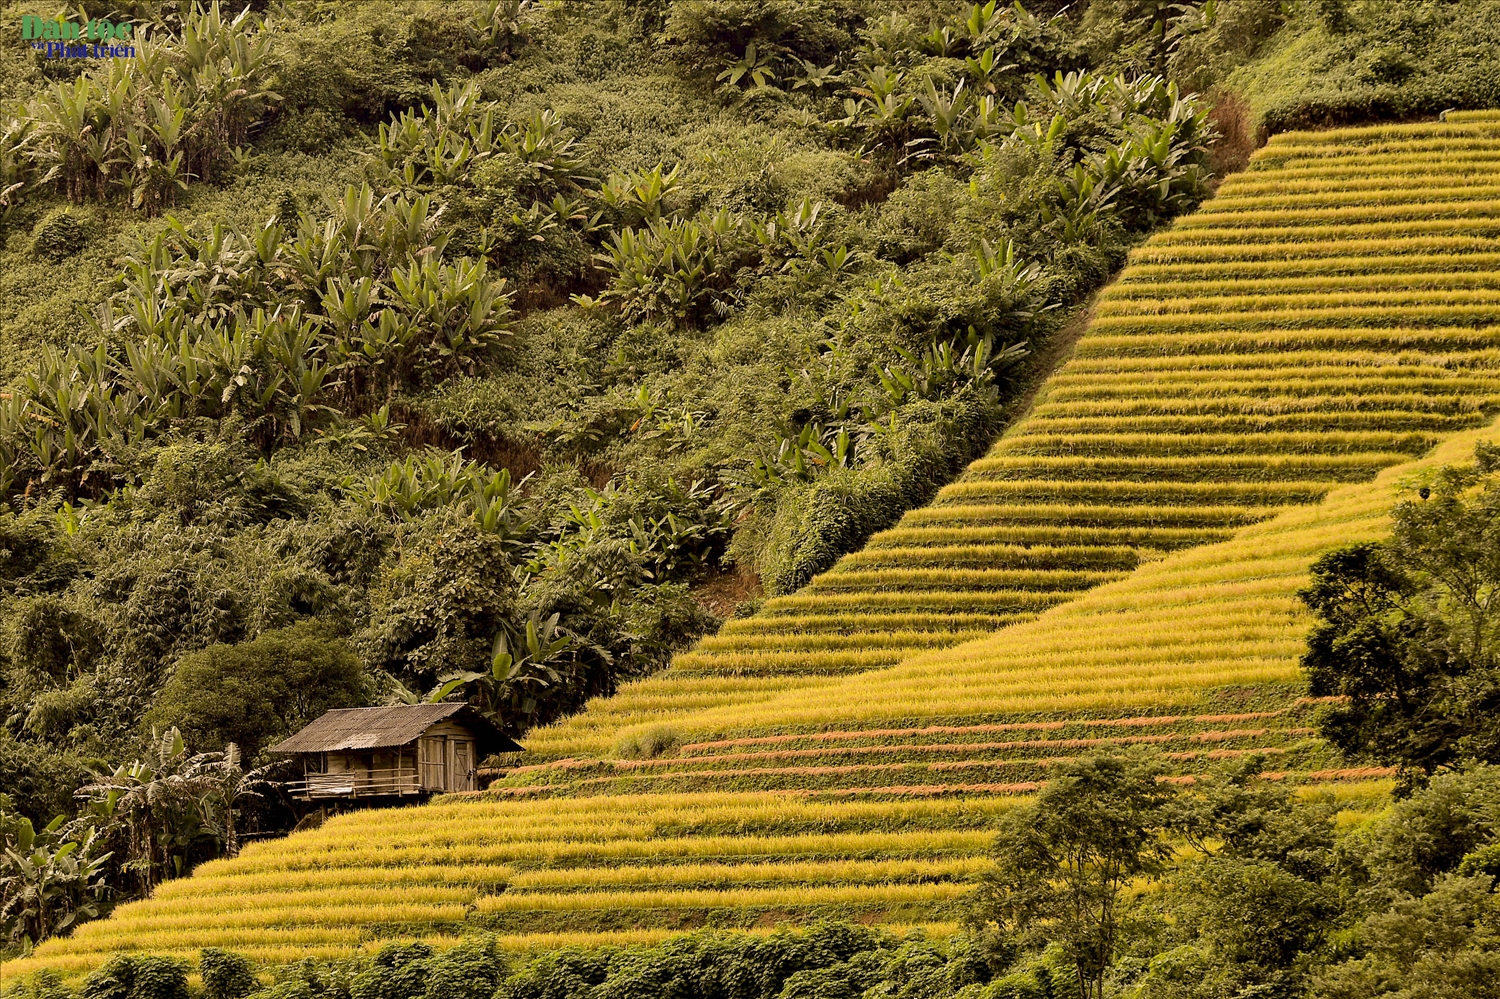 Những triền ruộng bậc thang đang vào độ chín, báo hiệu một “mùa vàng” ấm no đang hiện hữu nơi rẻo cao Lai Châu